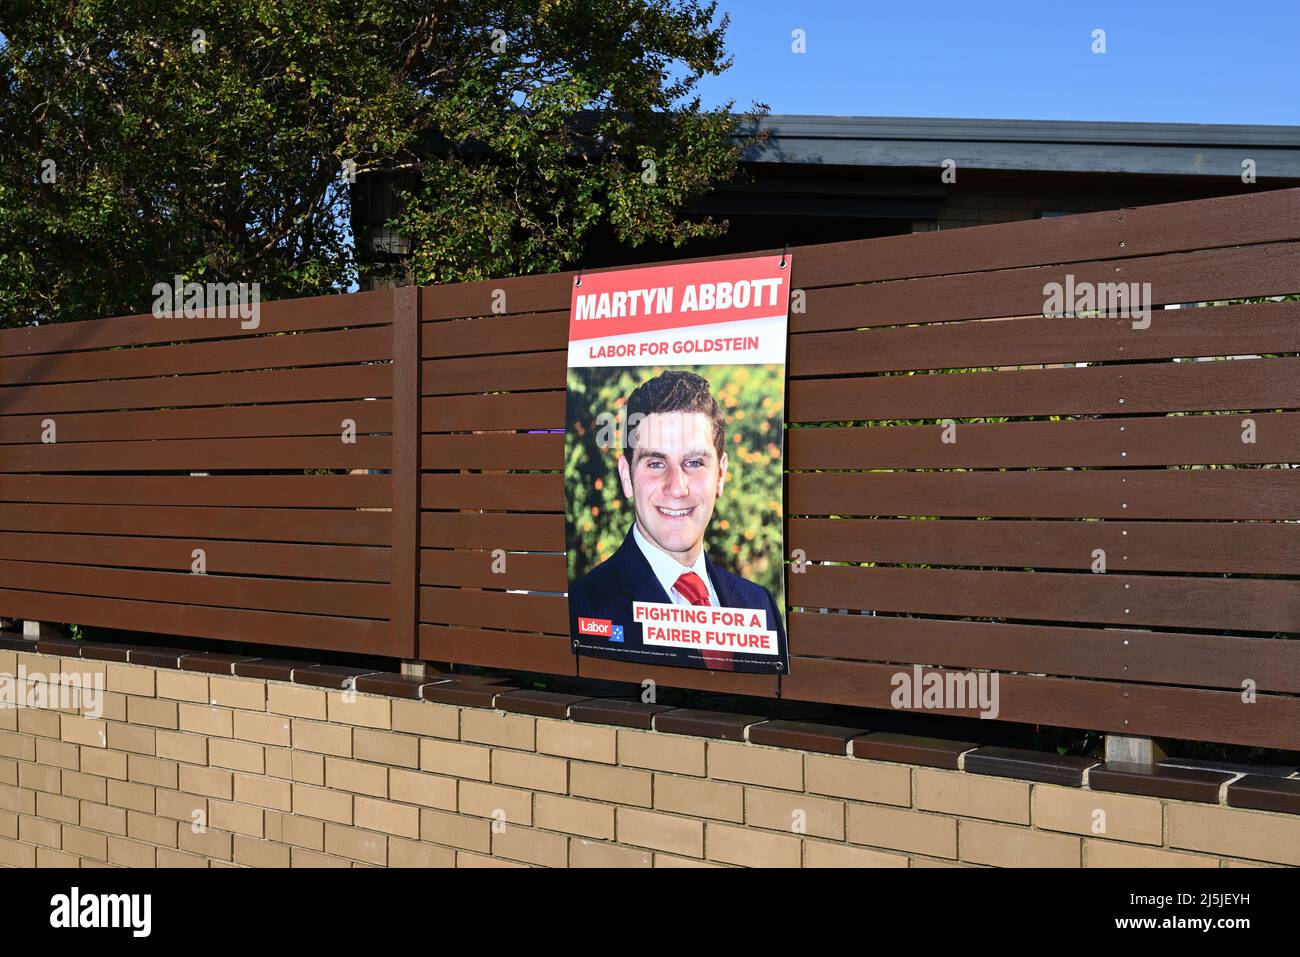 Panneau de campagne faisant la promotion du candidat travailliste à l'électorat de Goldstein aux élections fédérales, Martyn Abbott, sur la barrière d'une maison de banlieue Banque D'Images